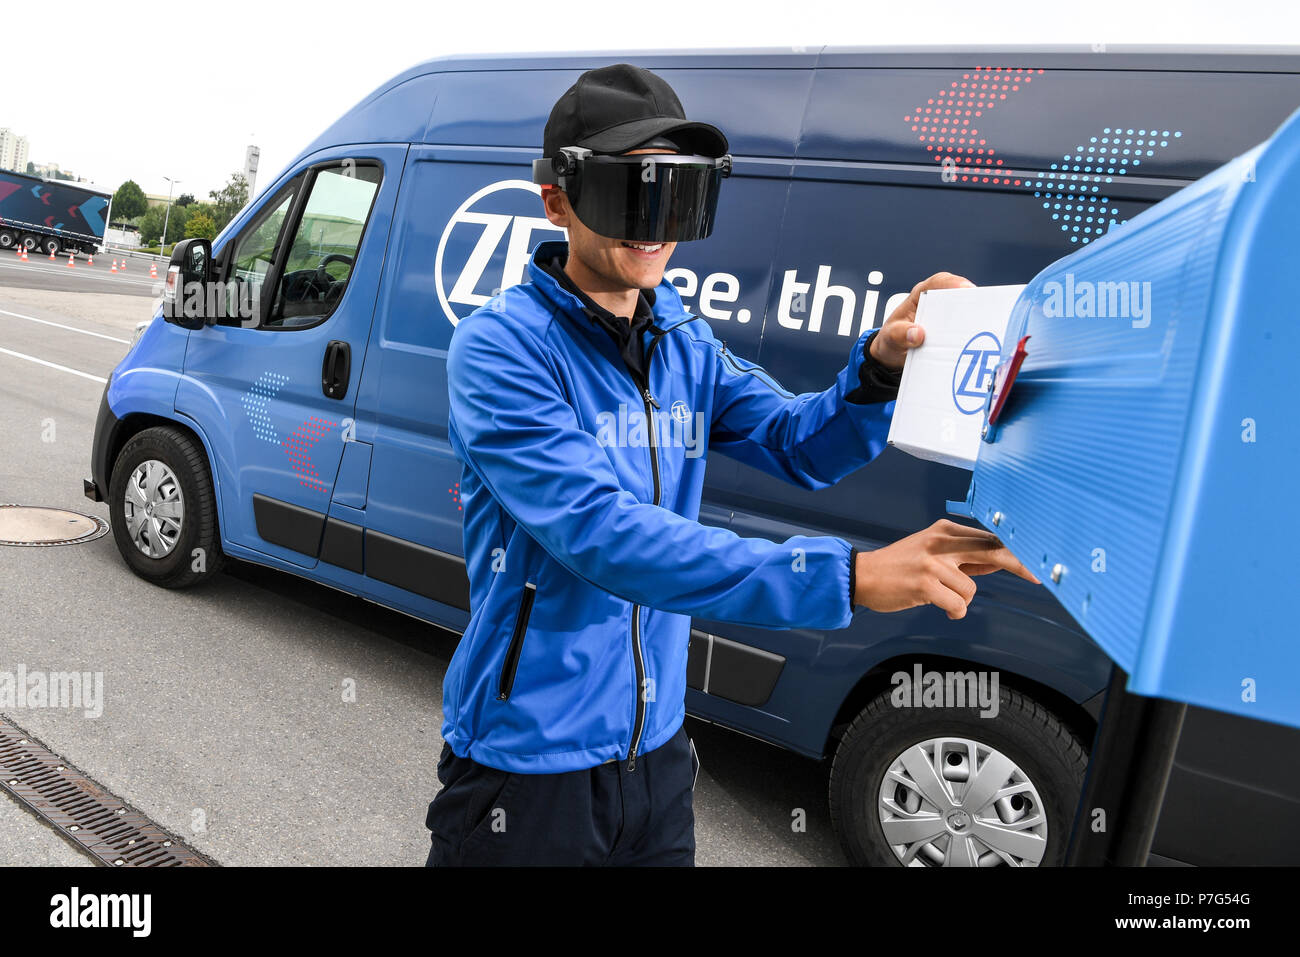 27 giugno 2018, Friedrichshafen, Germania: un dipendente ZF trasporta un pacchetto mentre l'innovazione ZF Van unità dalla stessa, ad esempio per spostare al di fuori di un no-zona parcheggio. Un paio di occhiali di dati fornisce il personale addetto alle consegne con informazioni sulla prossima fermata. Foto: Felix Kästle/dpa Foto Stock